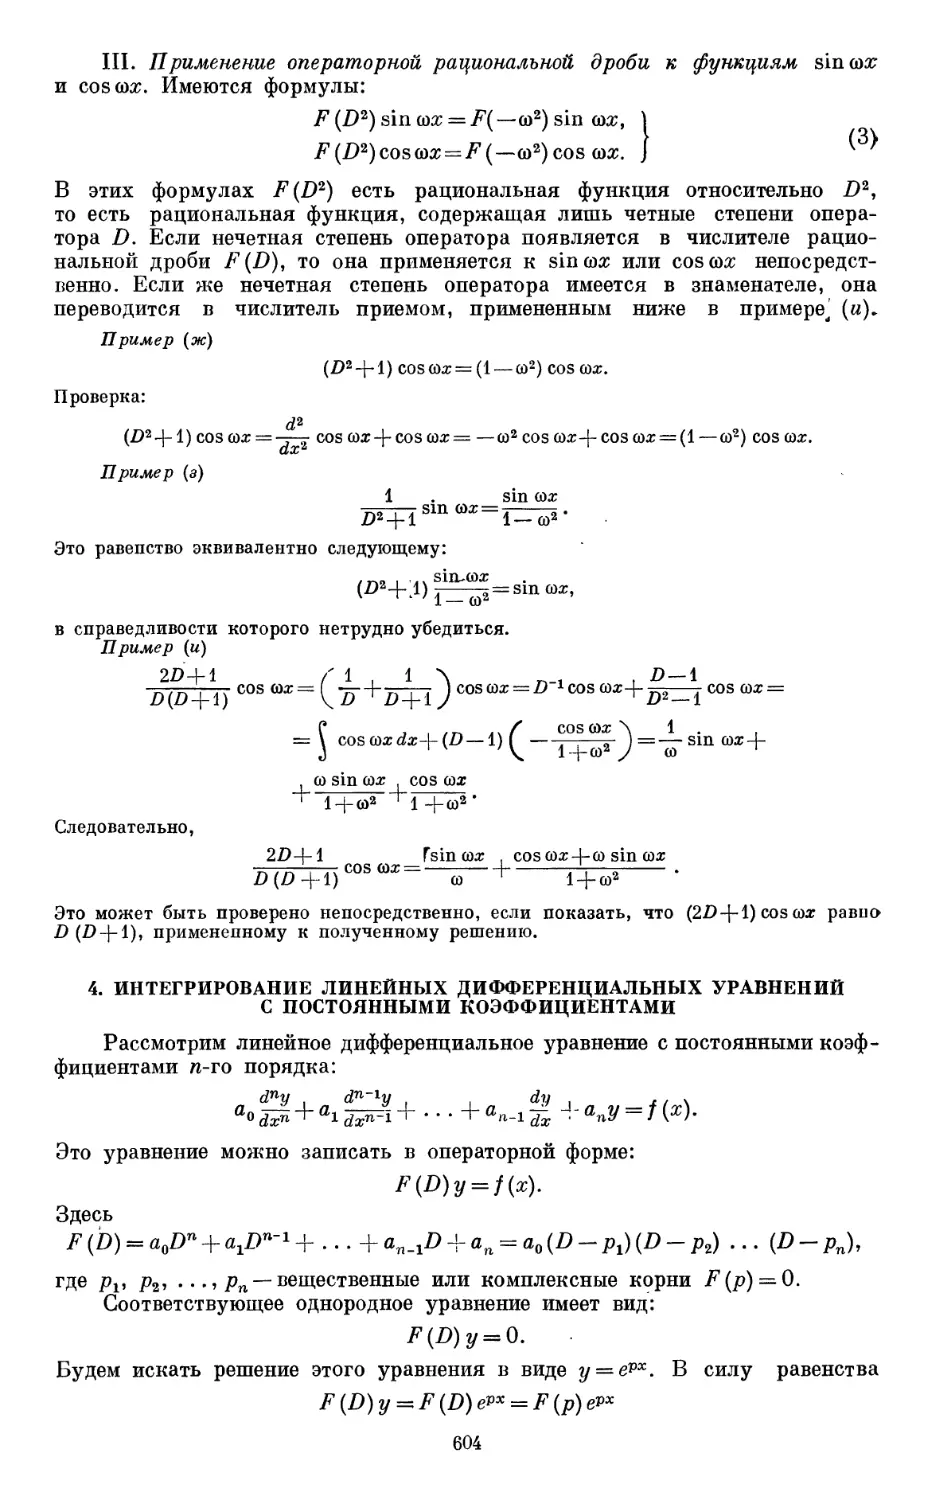 4. Интегрирование линейных дифференциальных уравнений с постоянными коэффициентами